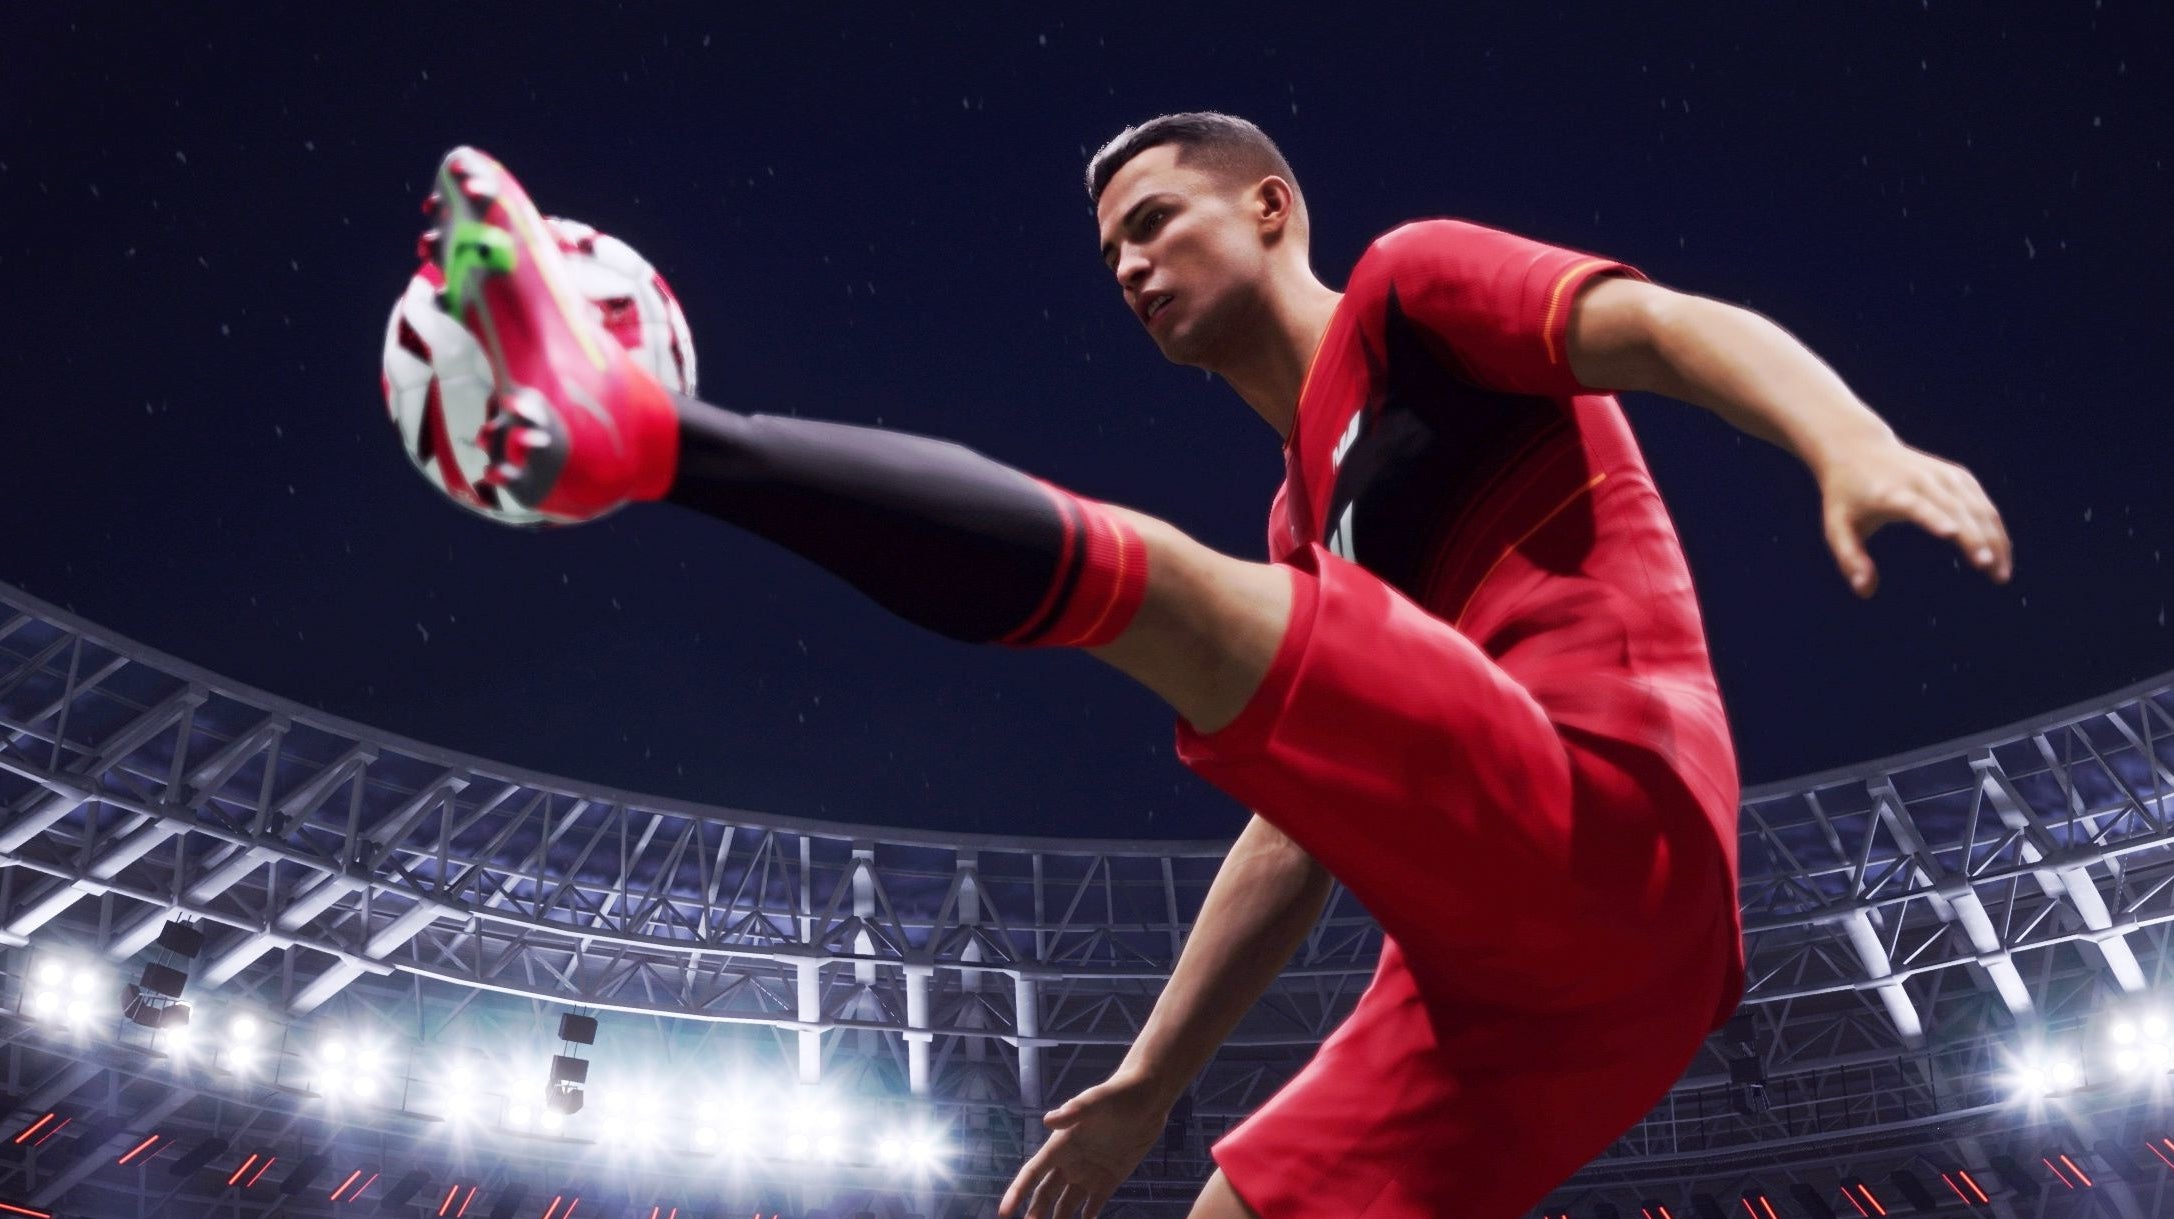 Bilder zu UFL bietet FIFA die Stirn und stellt Cristiano Ronaldo als Werbegesicht vor